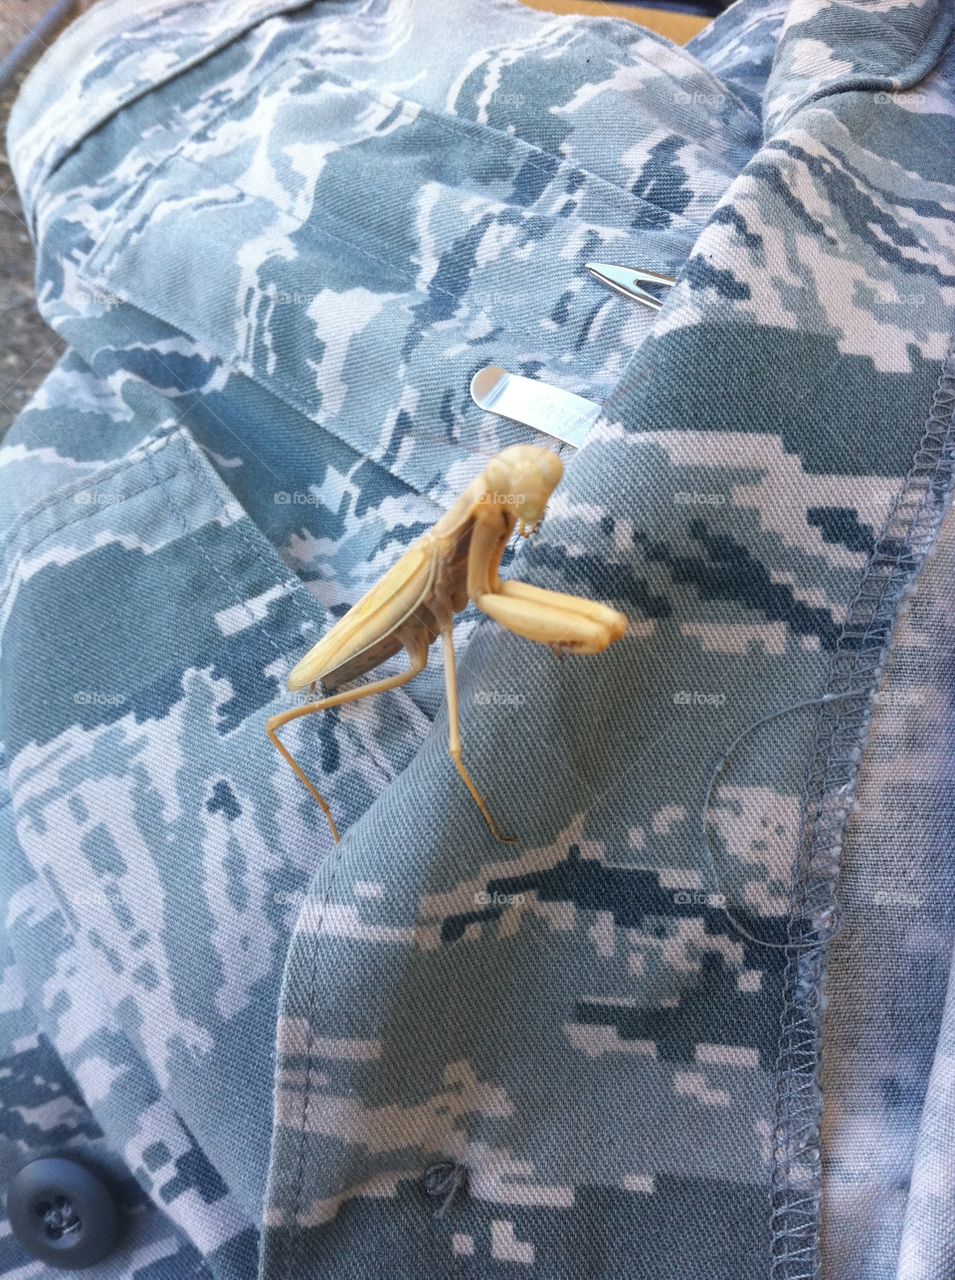 Praying for pray. praying Mantis on my uniform, California 